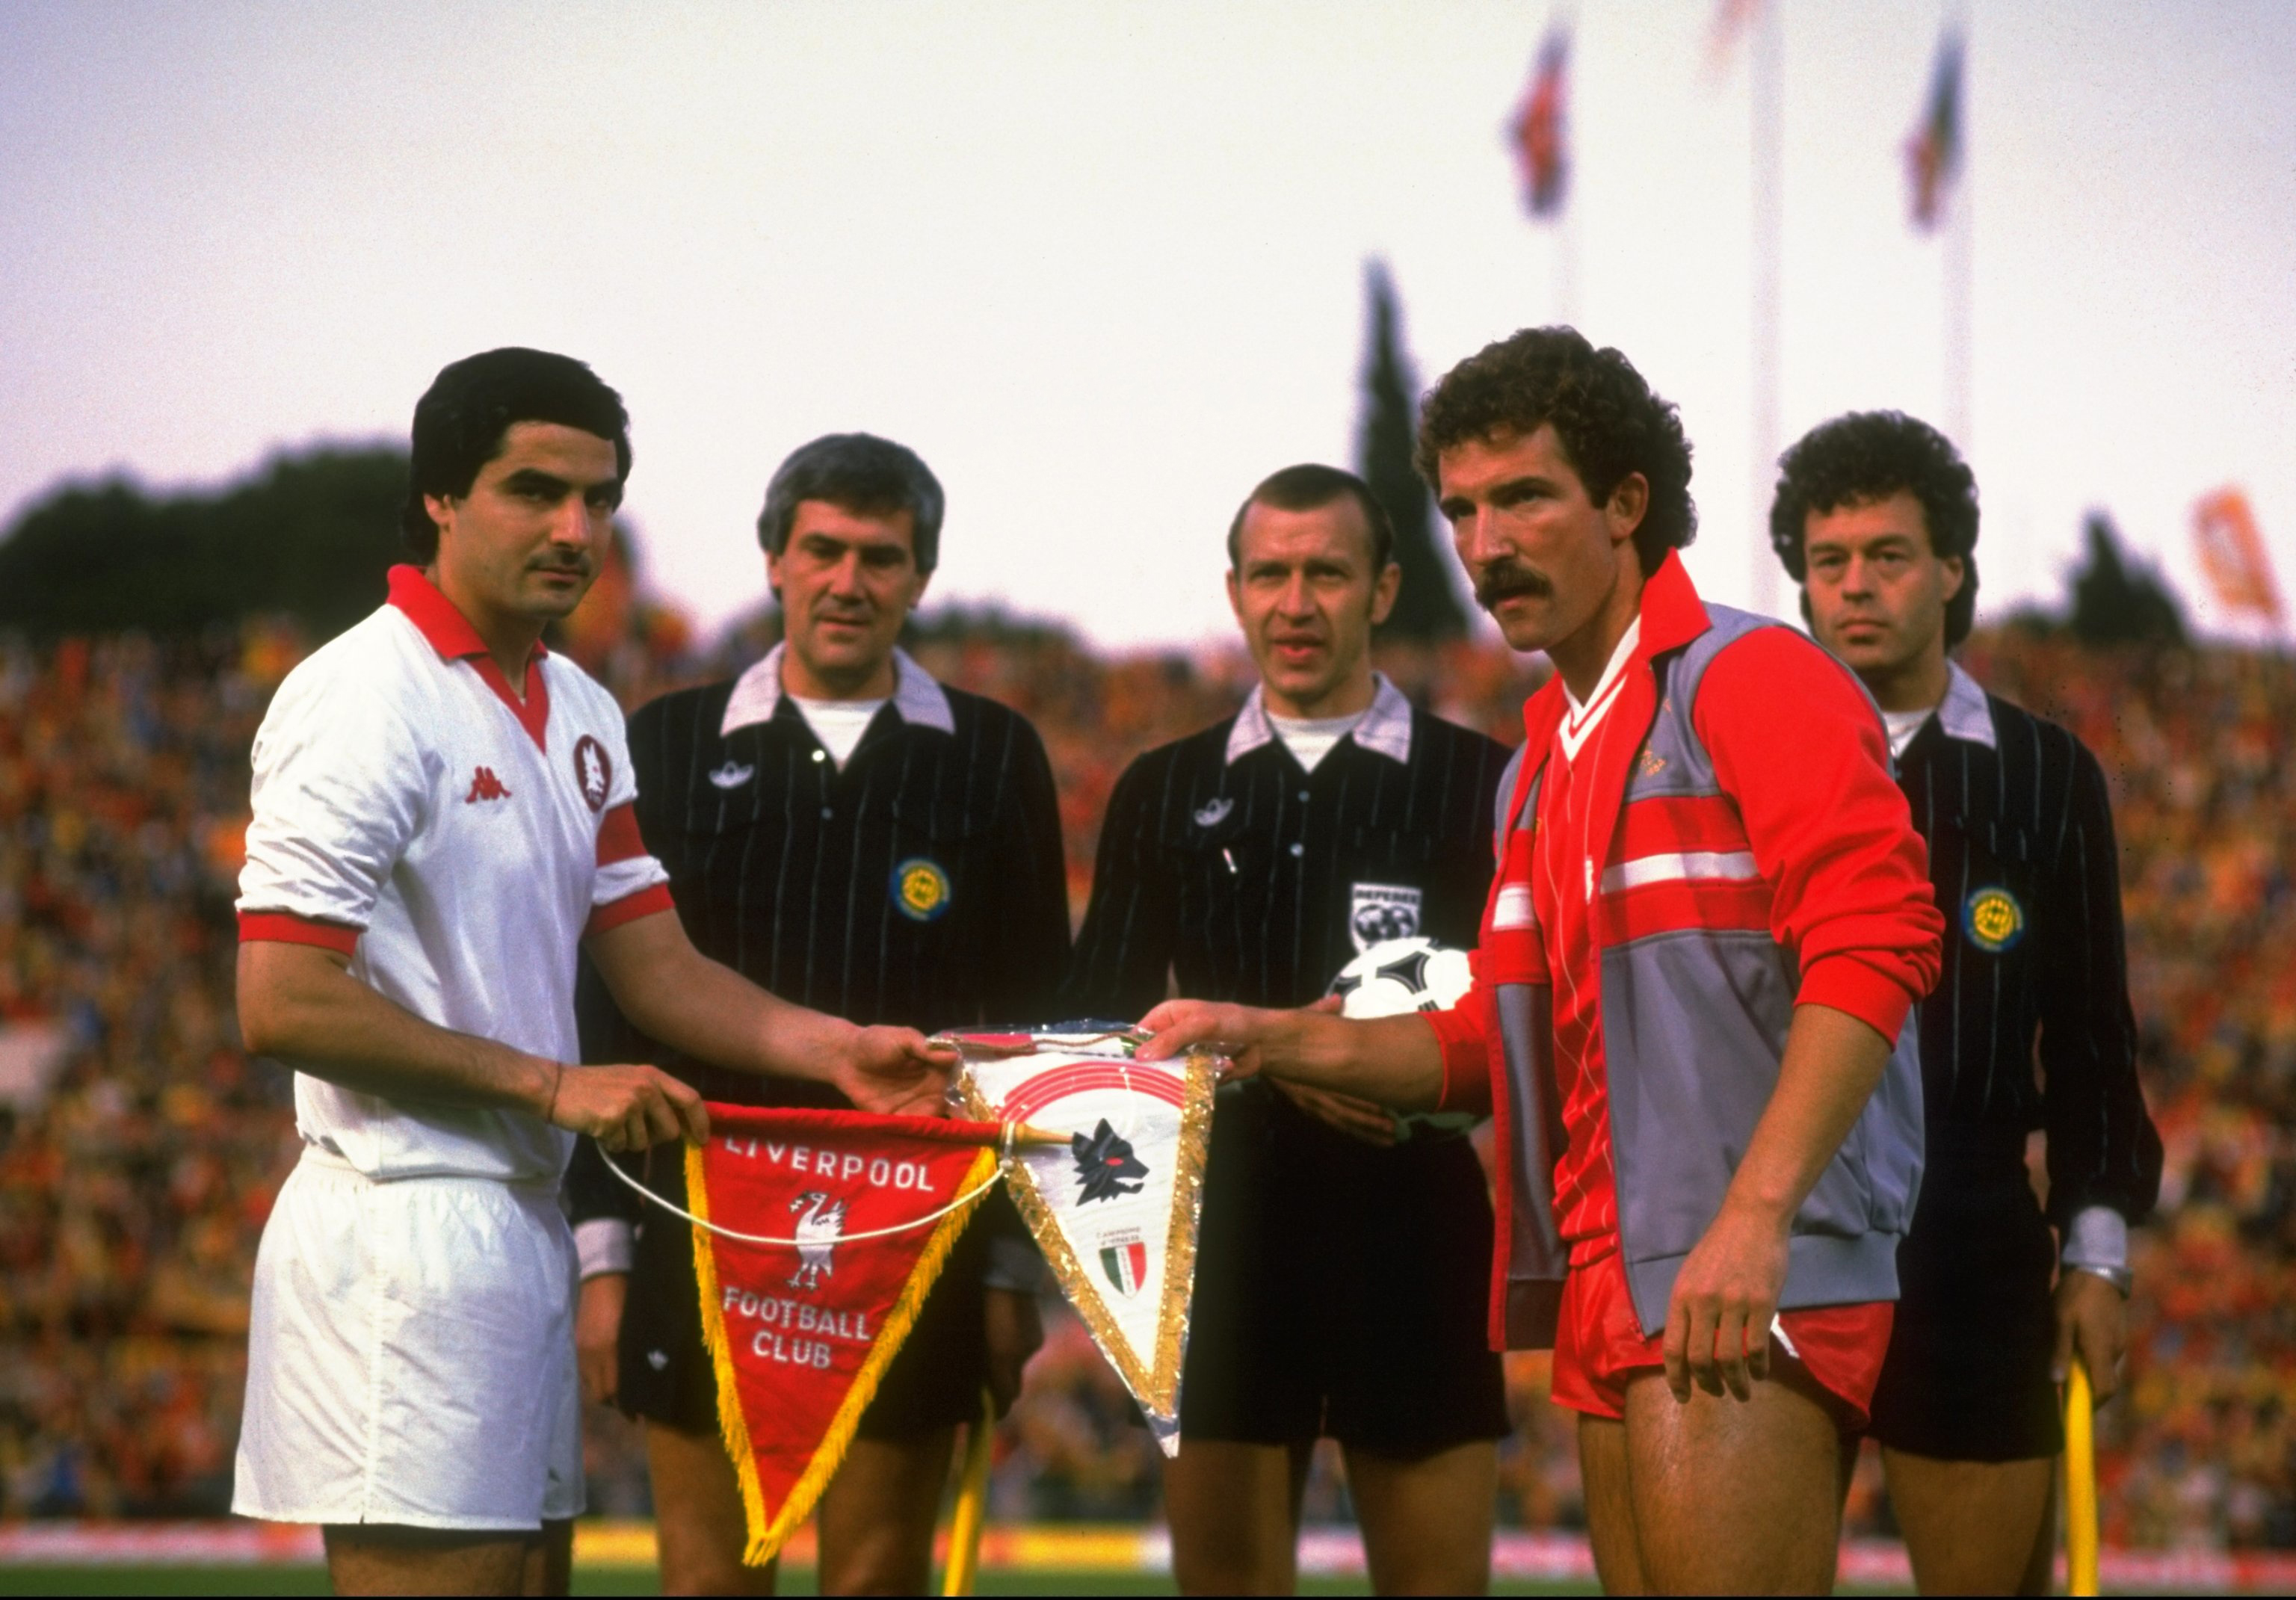 Coppa dei Campioni 1984, Liverpool-Roma - I capitani Di Bartolomei e Souness prima del match all'Olimpico